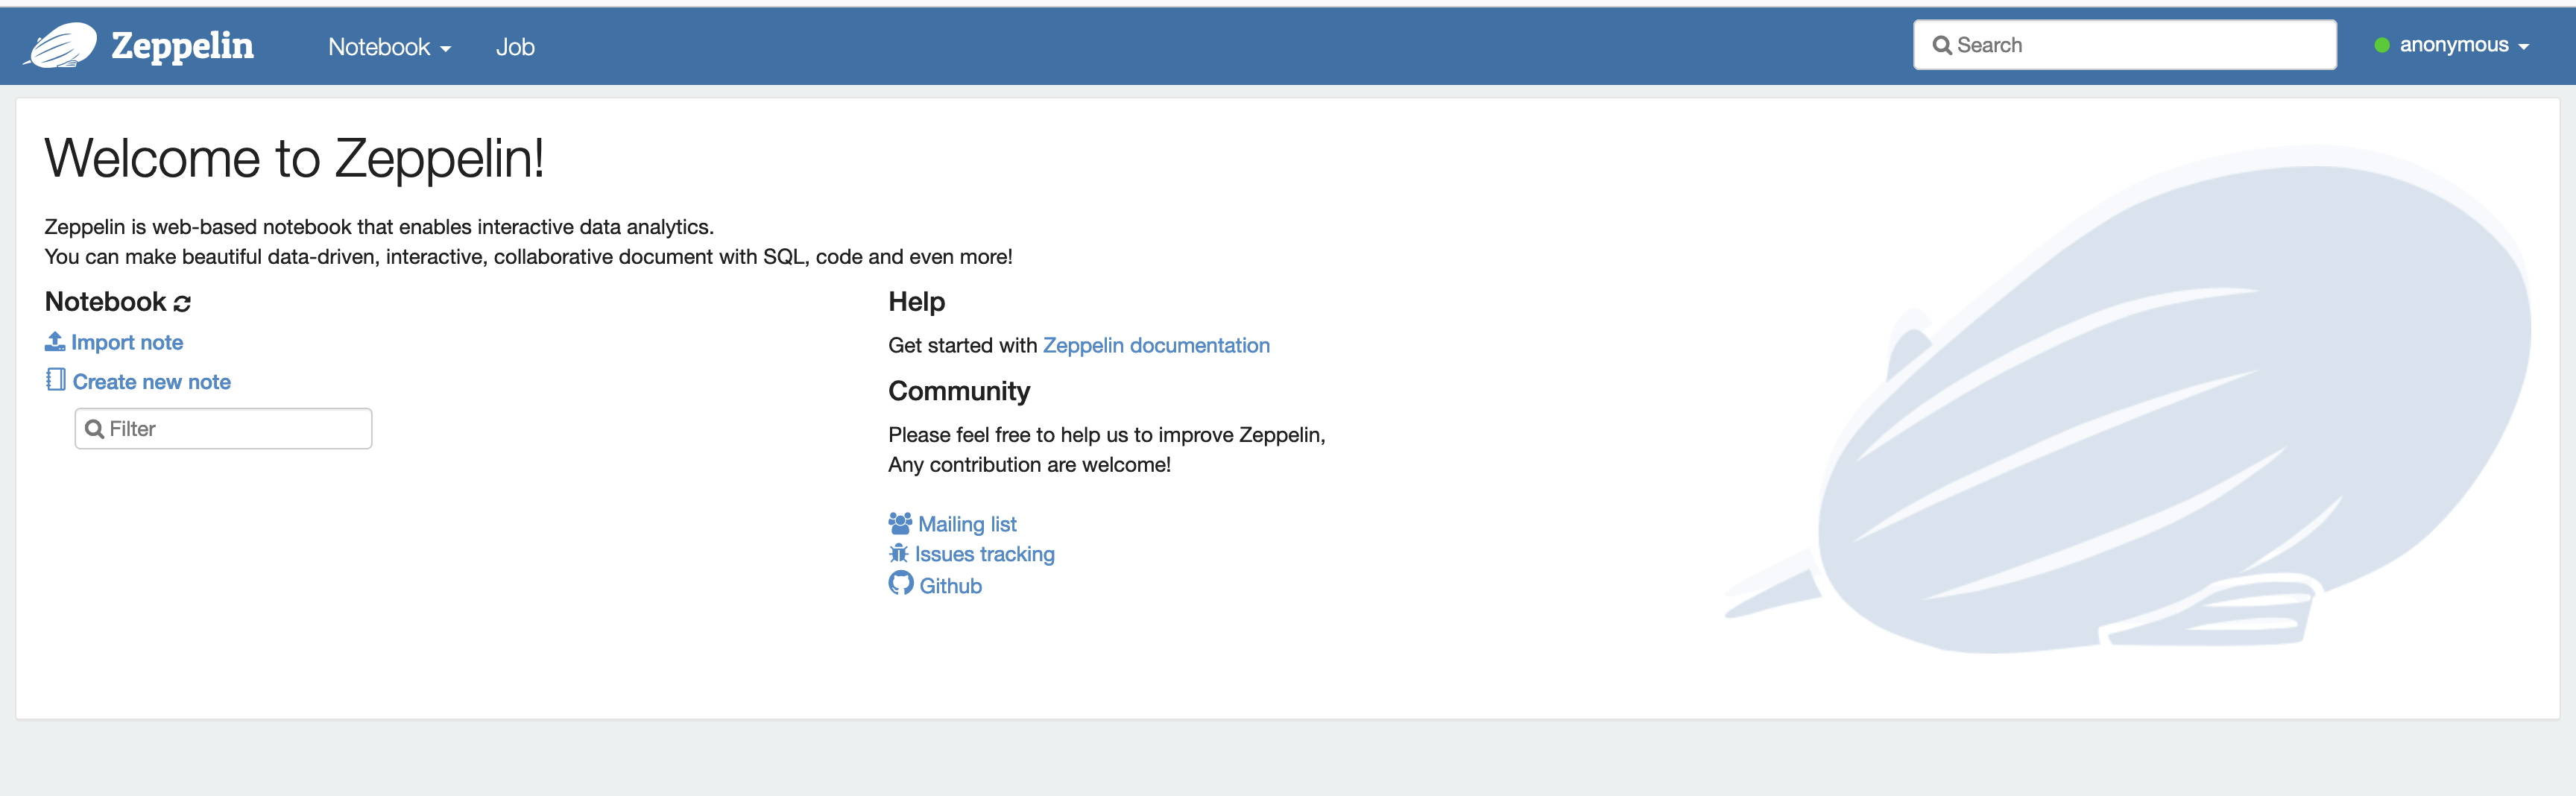 在 Zeppelin Web 界面上，您可以导入和创建新的笔记本。